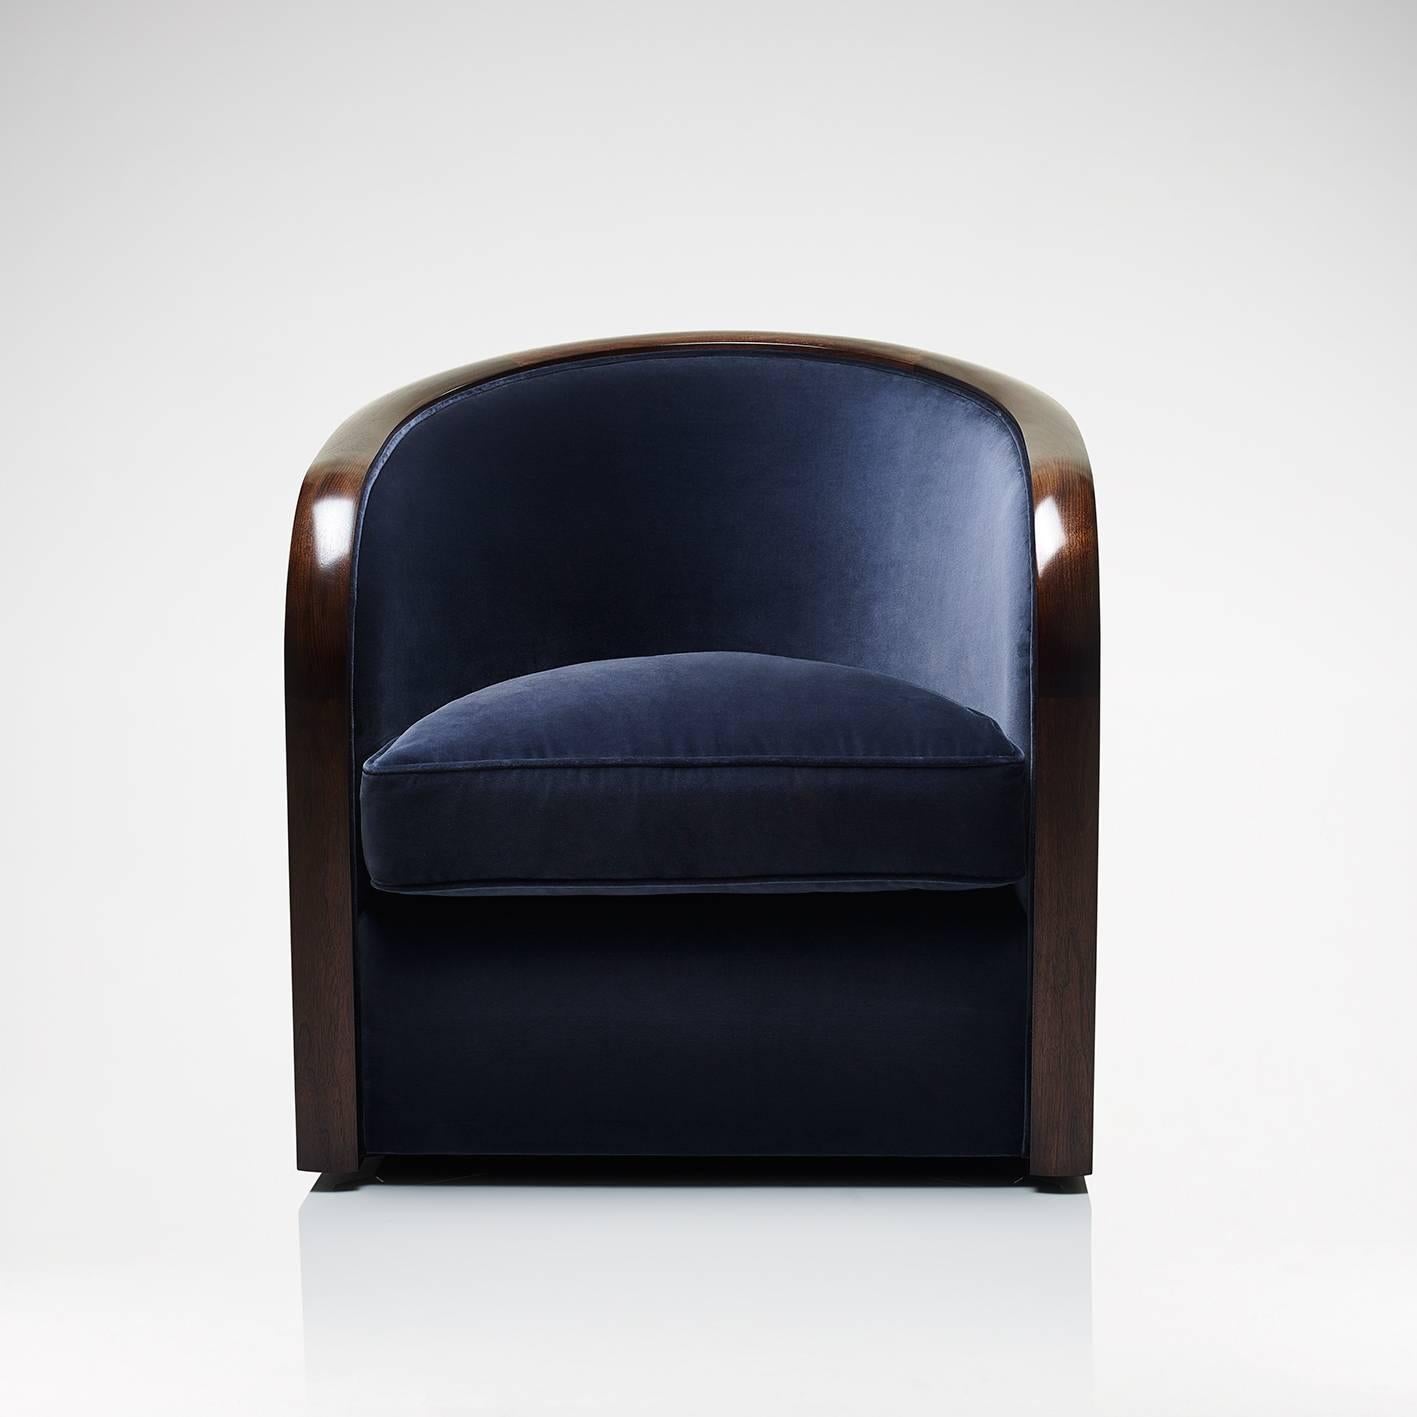 La chaise à baignoire rotative Savoy est fabriquée à la main dans nos ateliers britanniques selon des méthodes traditionnelles. De facture classique, la chaise est dotée de ressorts tendus à la main et d'un rebord en rotin. Le noyau de mousse est